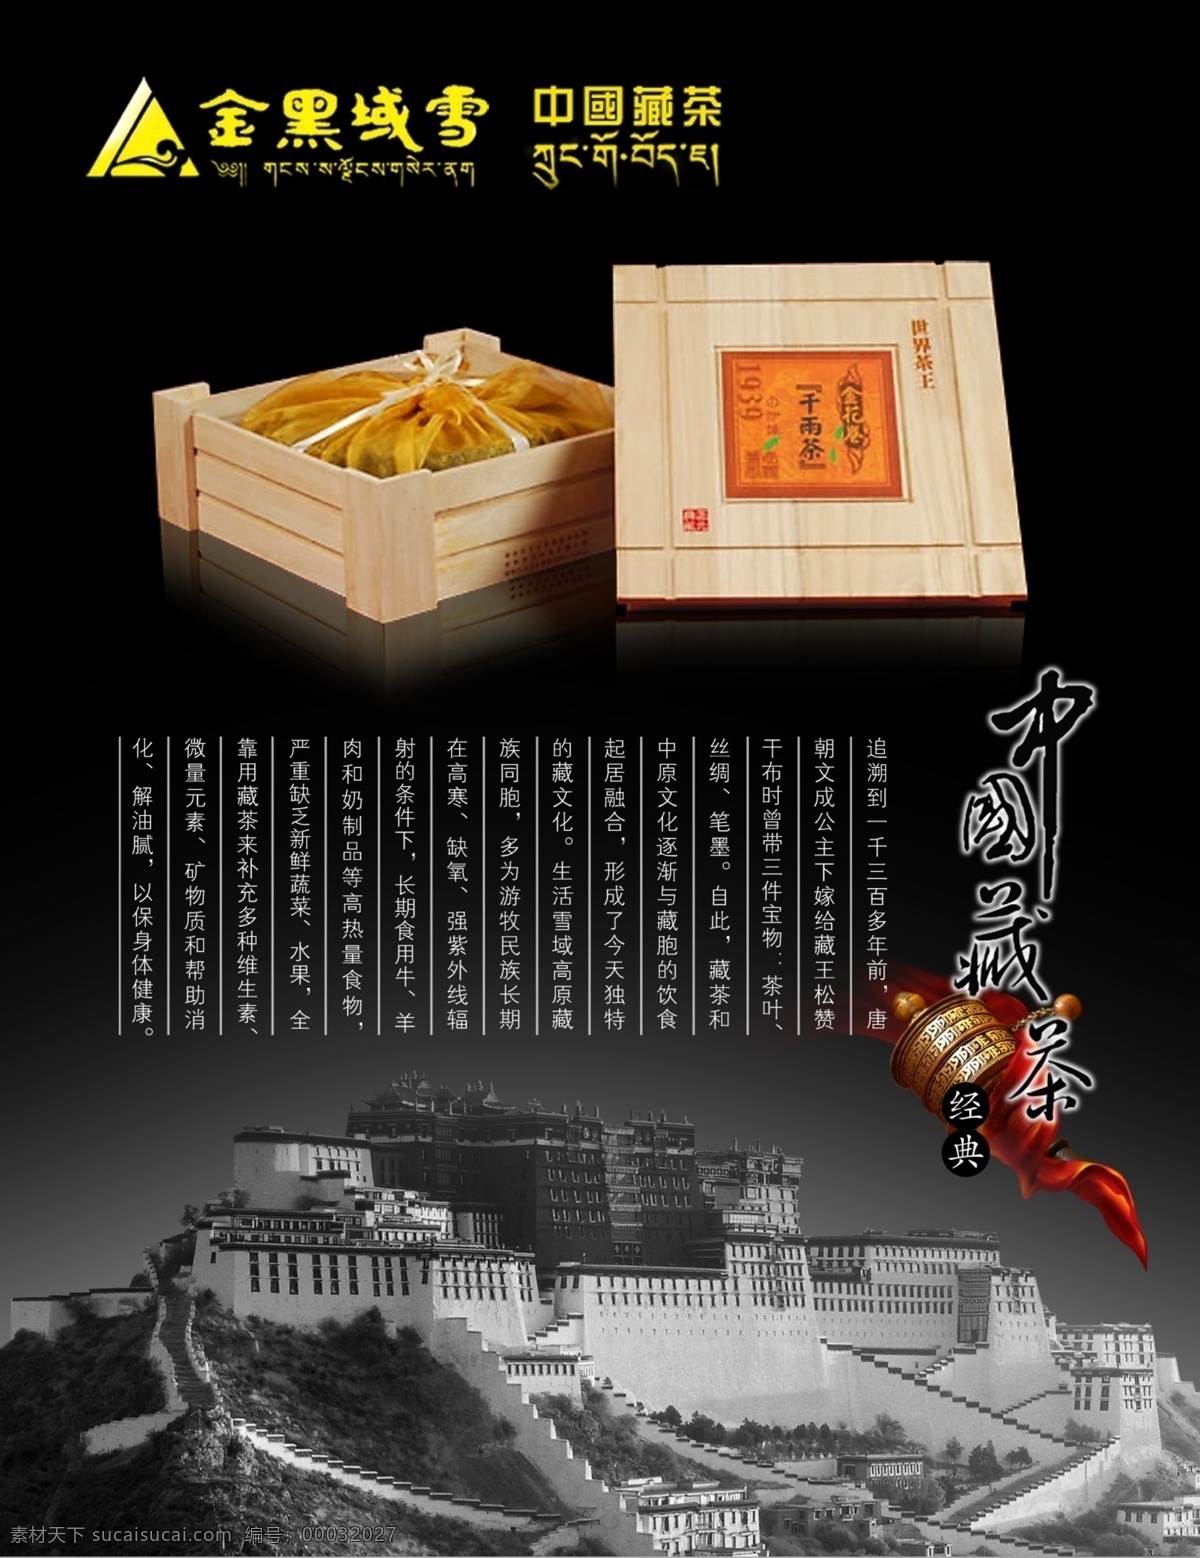 包装盒 背景渐变黑 茶 中国藏茶 茶素材 布达拉宫 金色雪域 世界茶王 茶叶盒 茶文化 红色